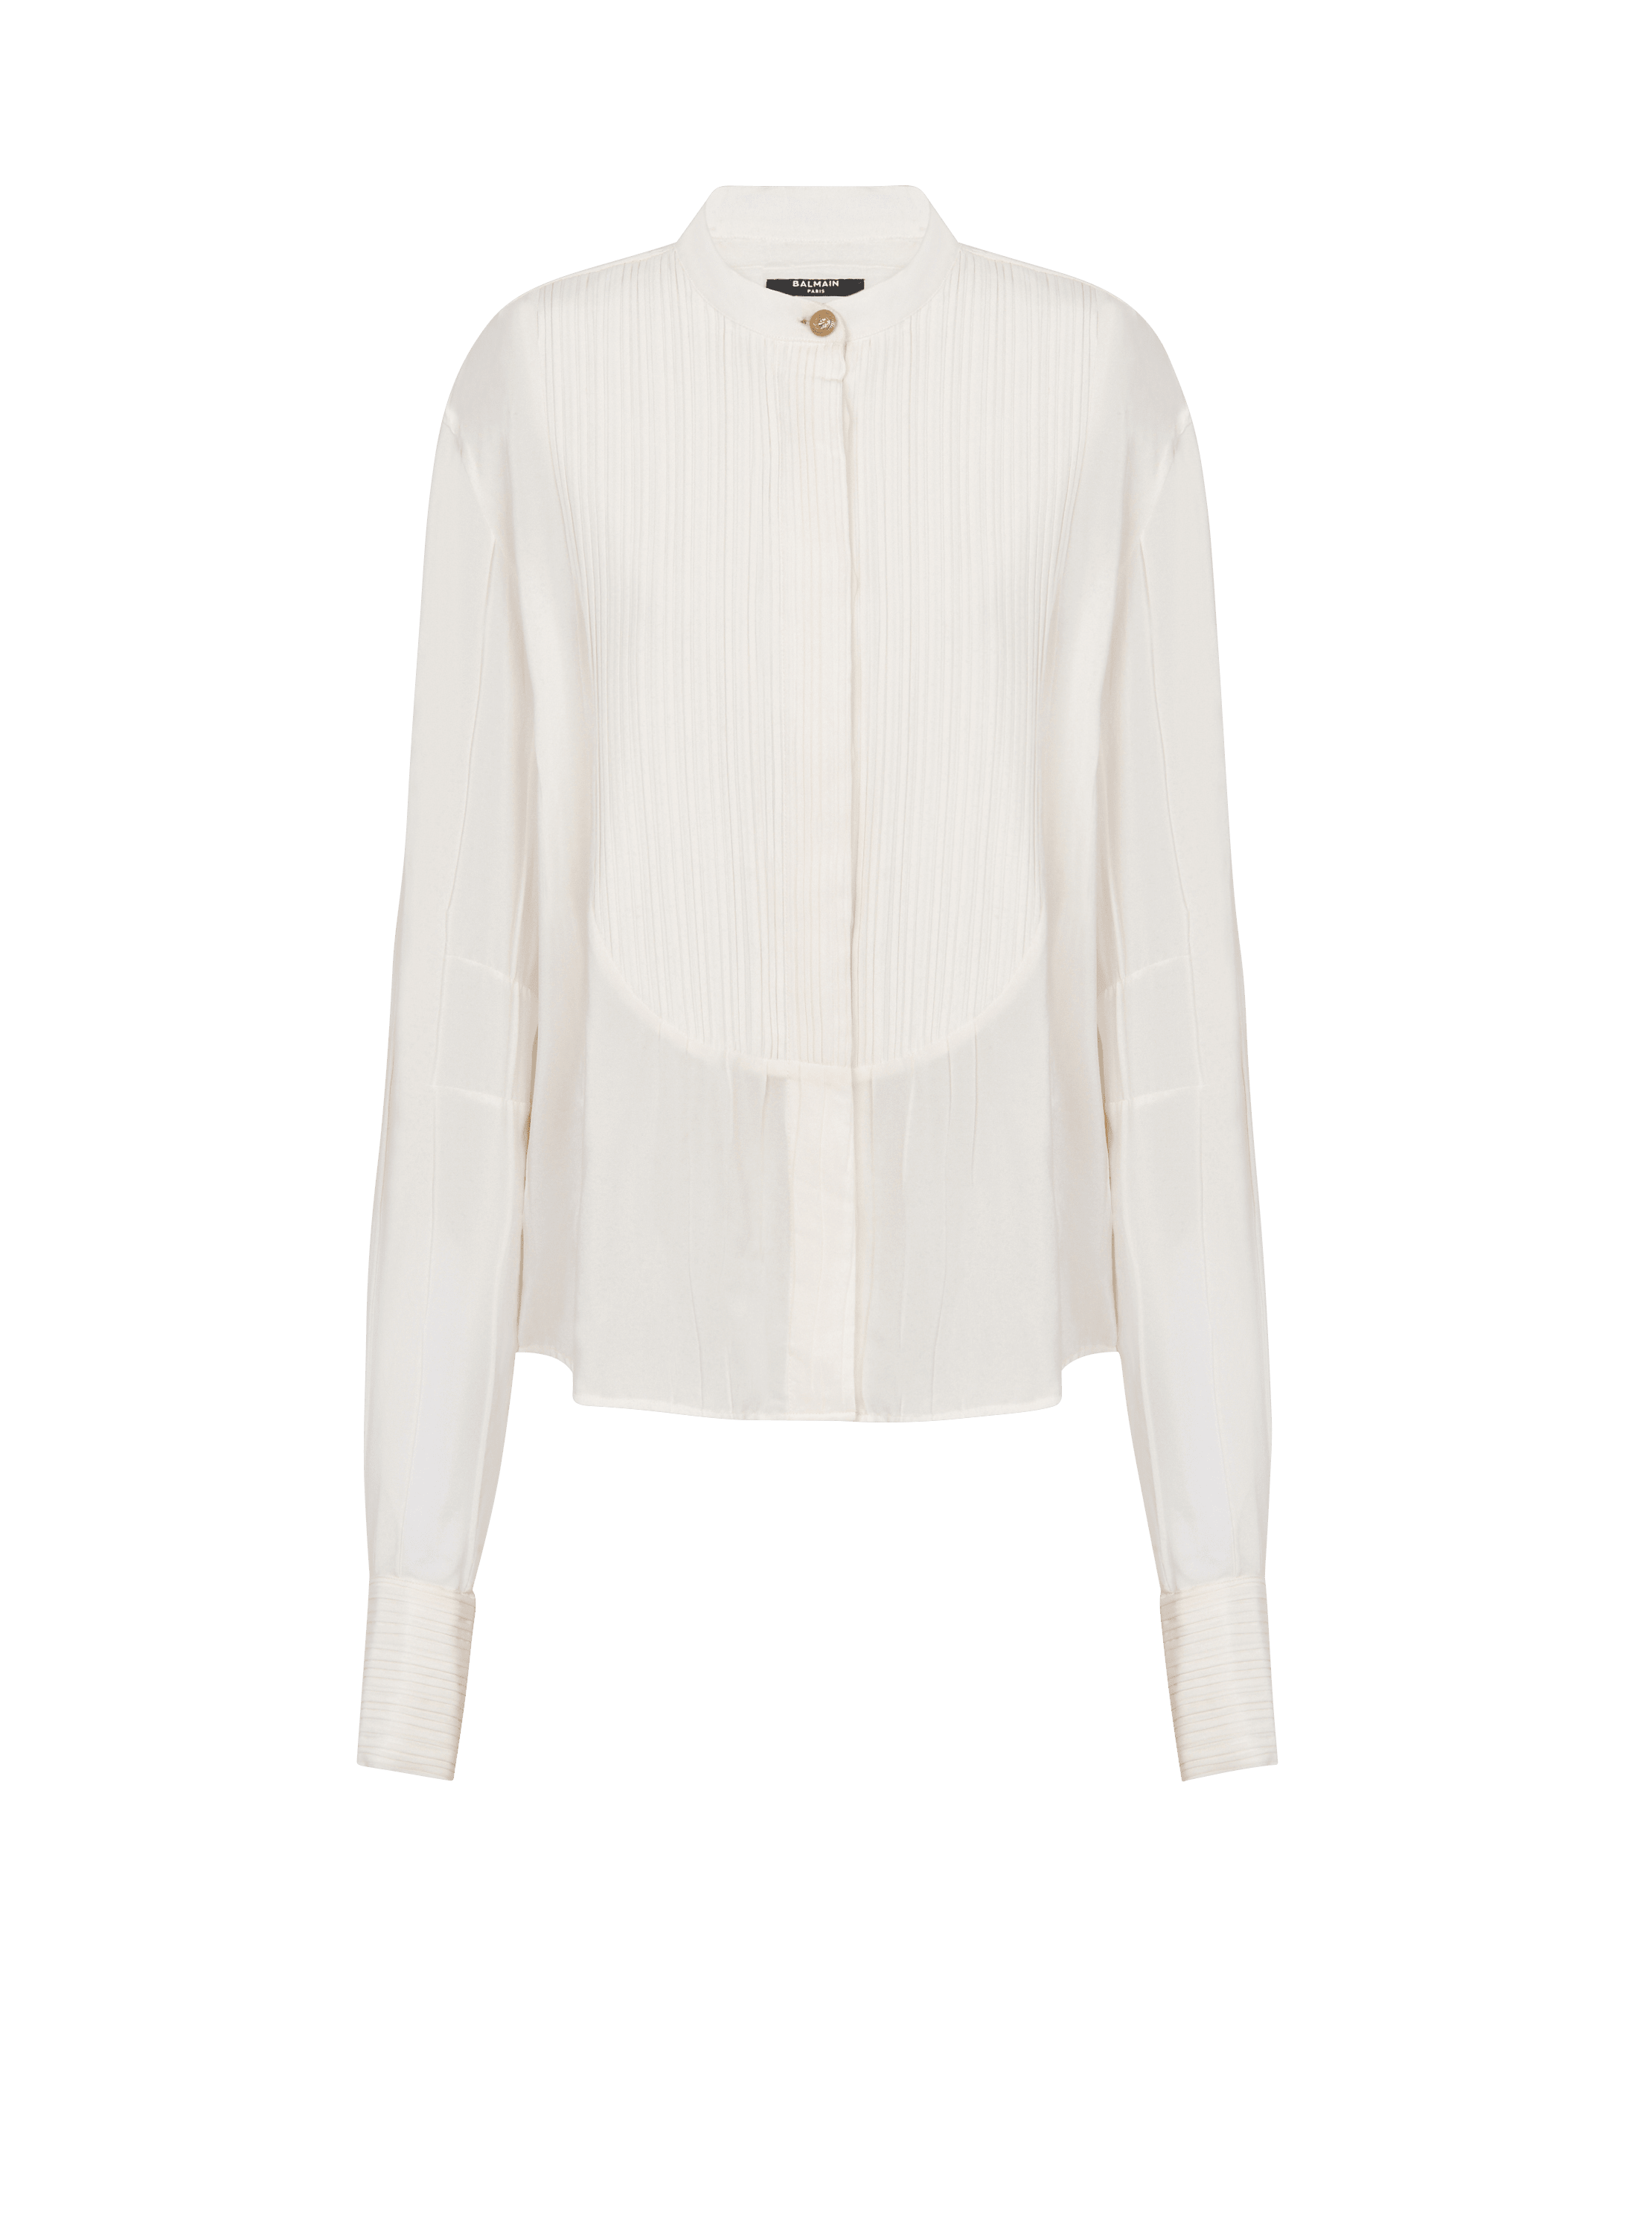 Camisa con pechera plisada de crepé, blanco, hi-res